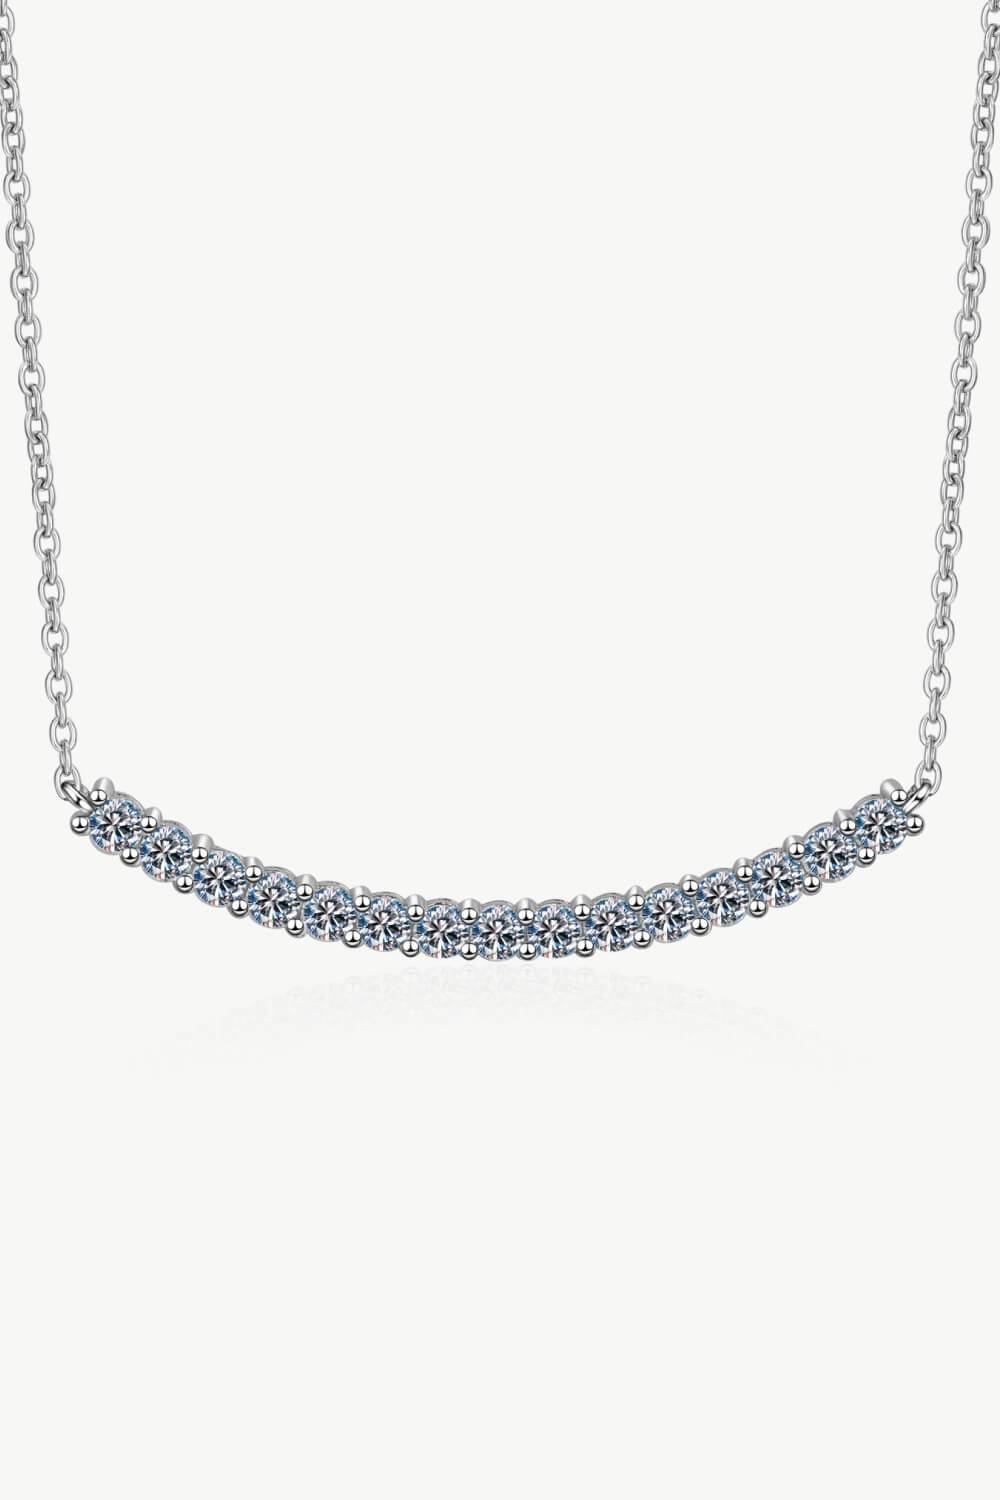 Sterling Silver Curved Bar Necklace - DromedarShop.com Online Boutique